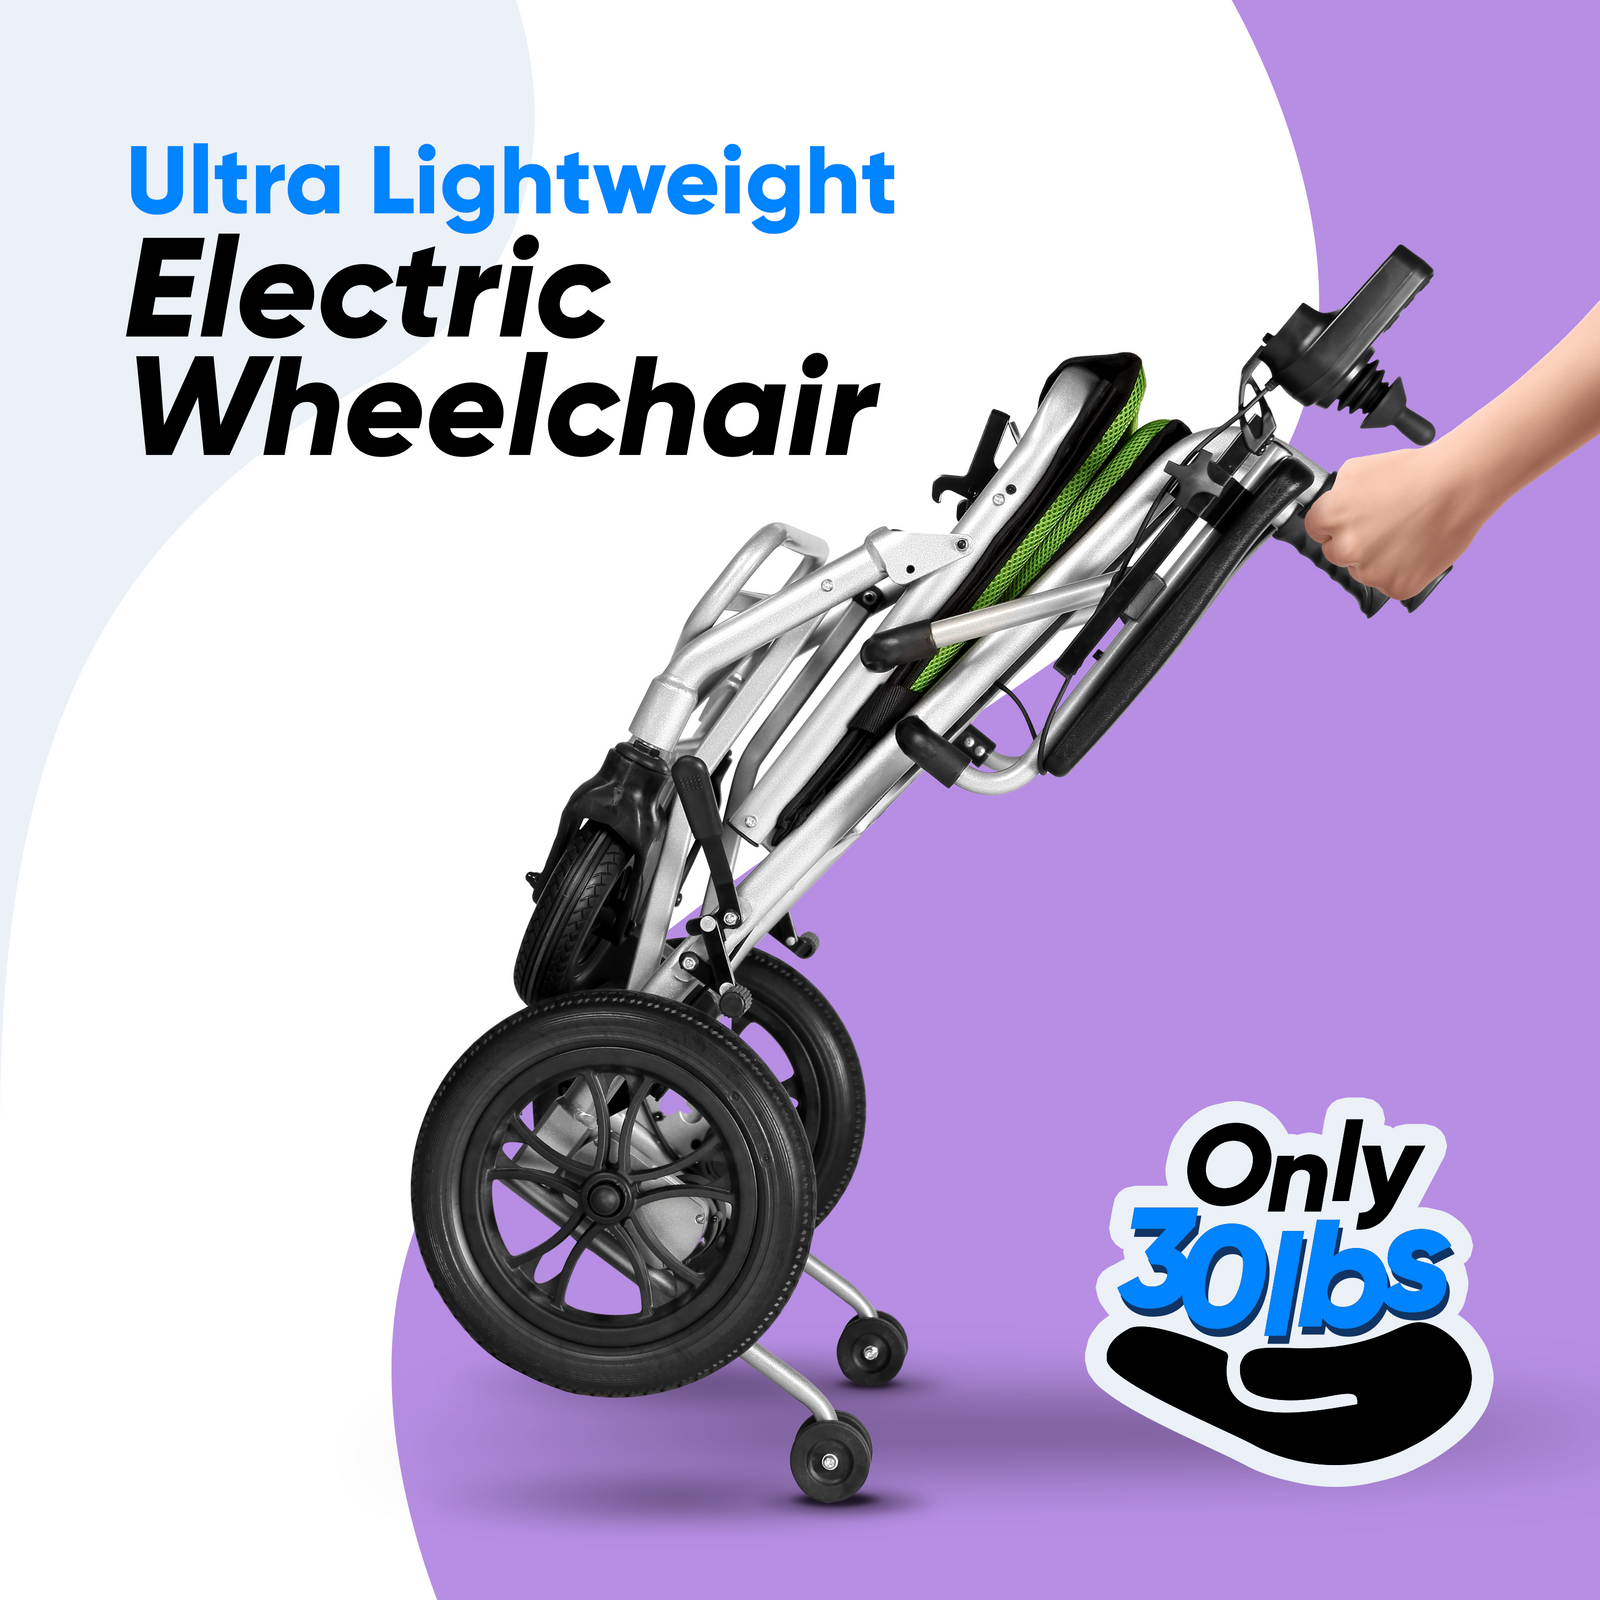 ultra lightweight electric wheelchair